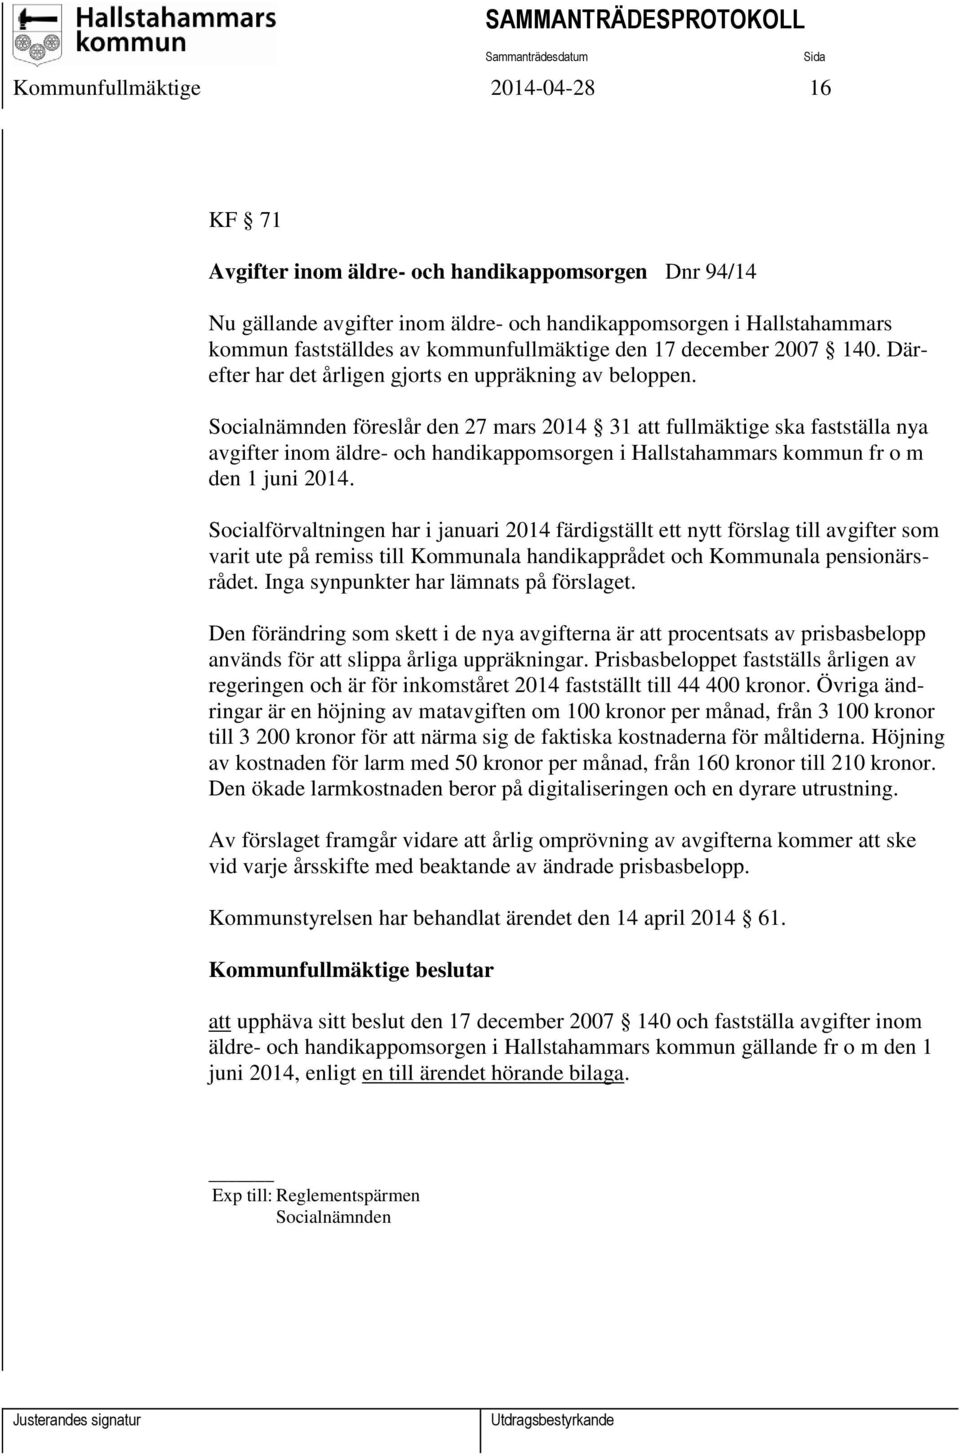 Socialnämnden föreslår den 27 mars 2014 31 att fullmäktige ska fastställa nya avgifter inom äldre- och handikappomsorgen i Hallstahammars kommun fr o m den 1 juni 2014.